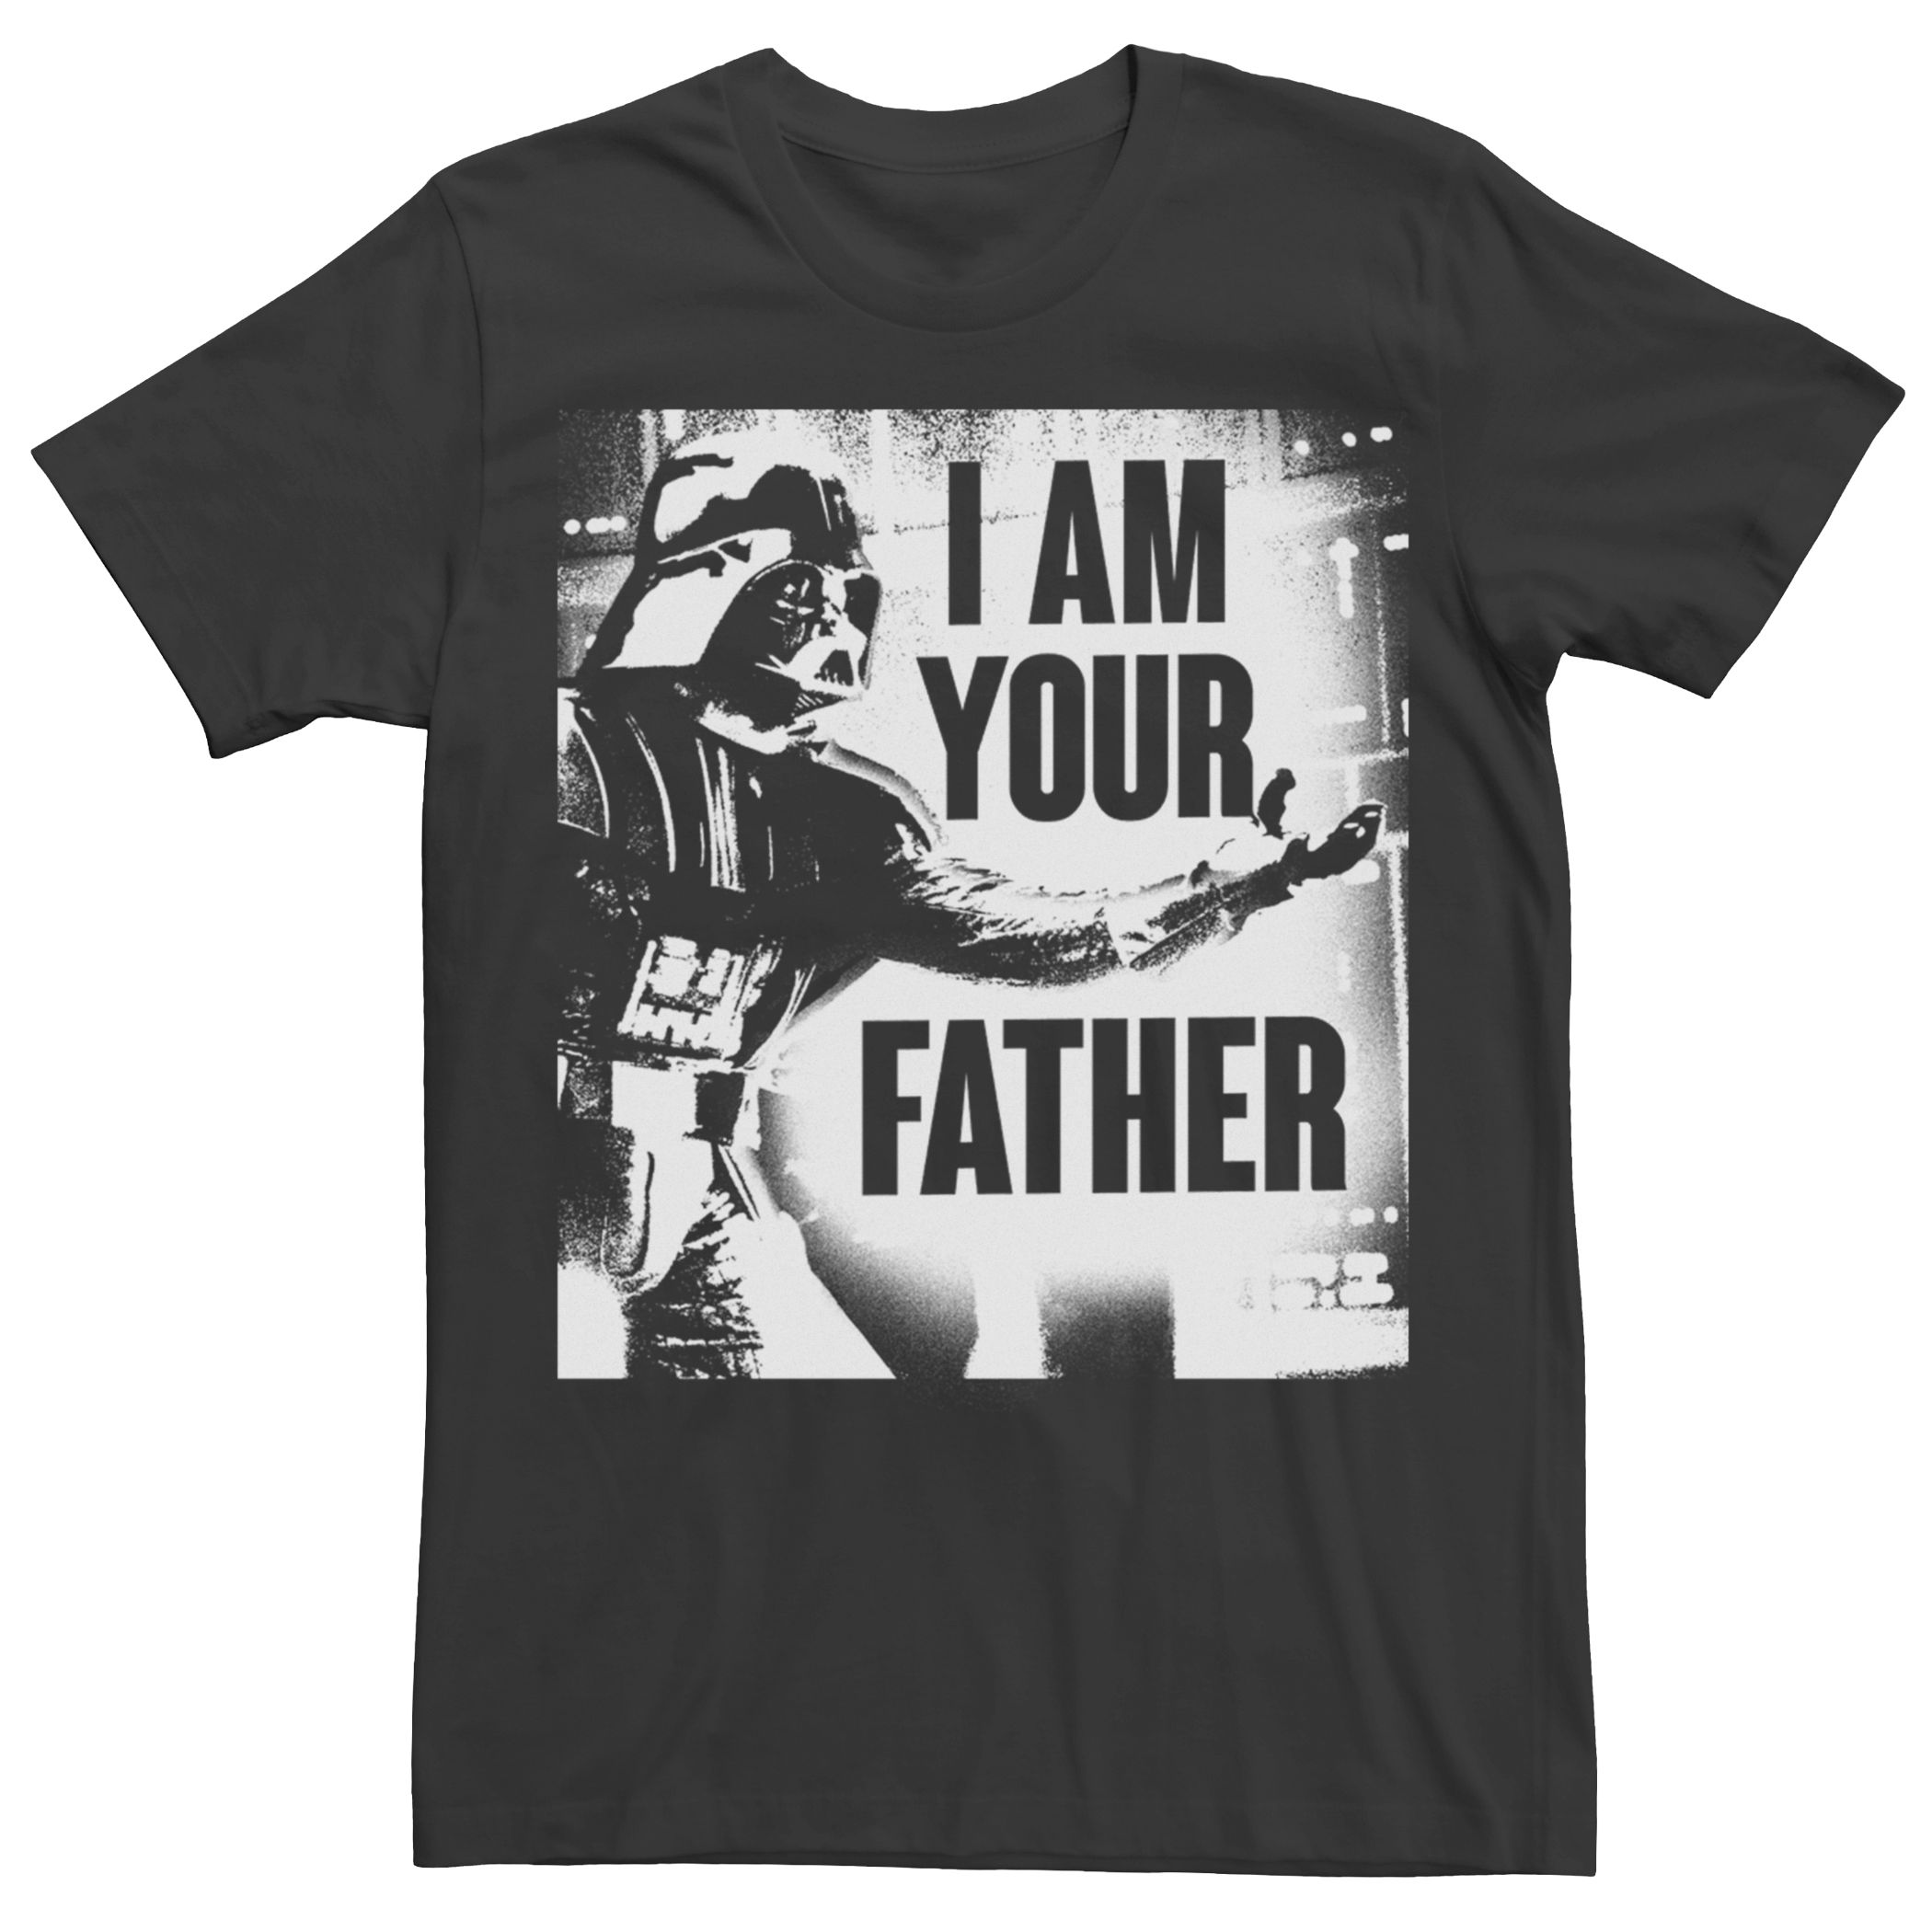 Мужская футболка с портретом Дарта Вейдера «Звездные войны» Licensed Character